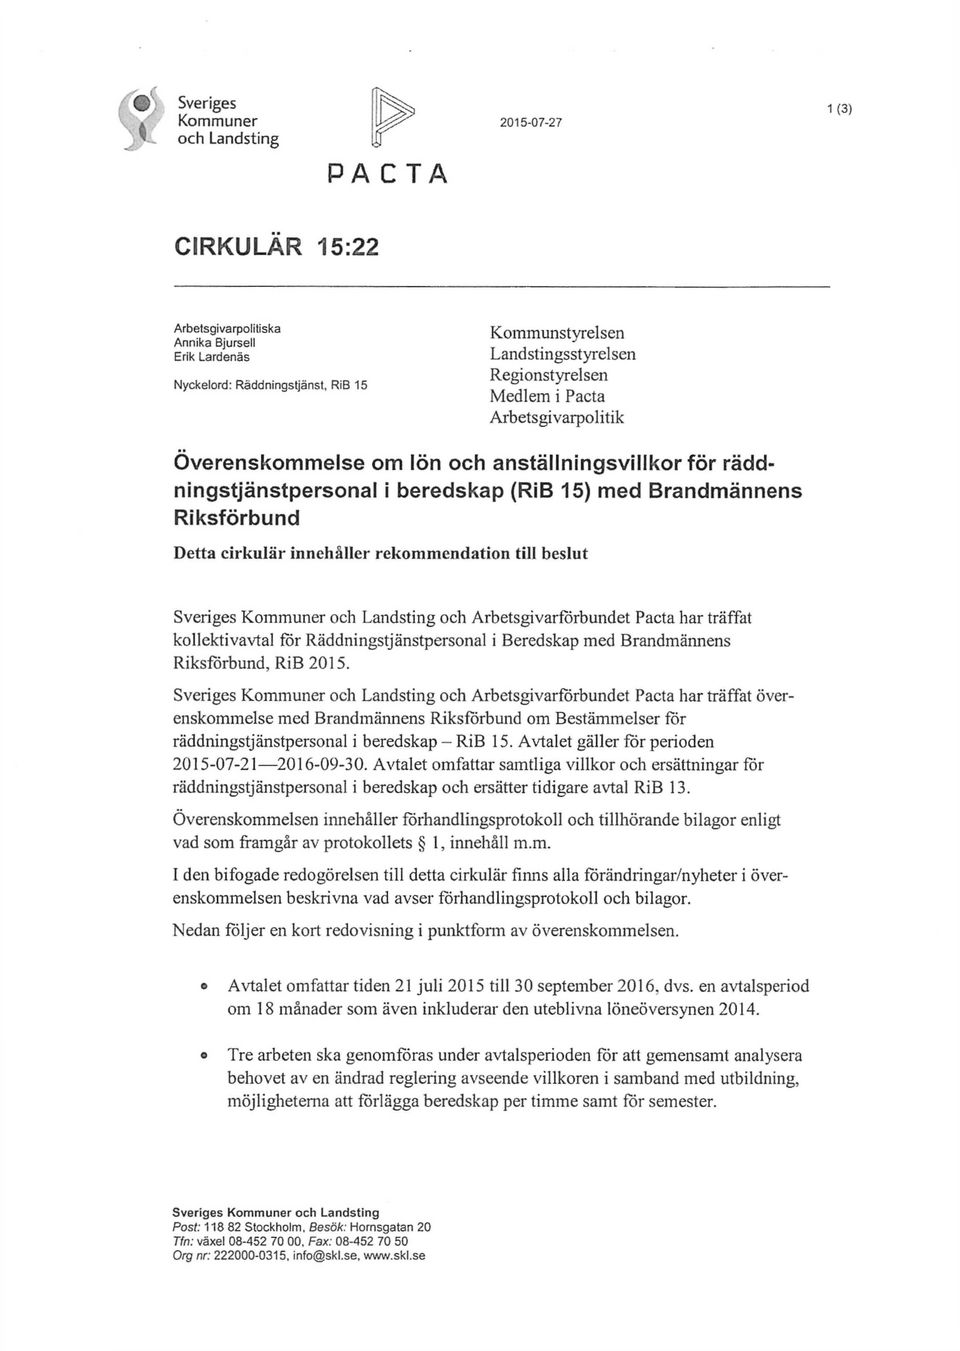 innehåller rekommendation till beslut Sveriges Kommuner och Landsting och Arbetsgivarforbundet Pacta har träffat kollektivavtal för Räddningstjänstpersonal i Beredskap med Brandmännens Riksförbund,